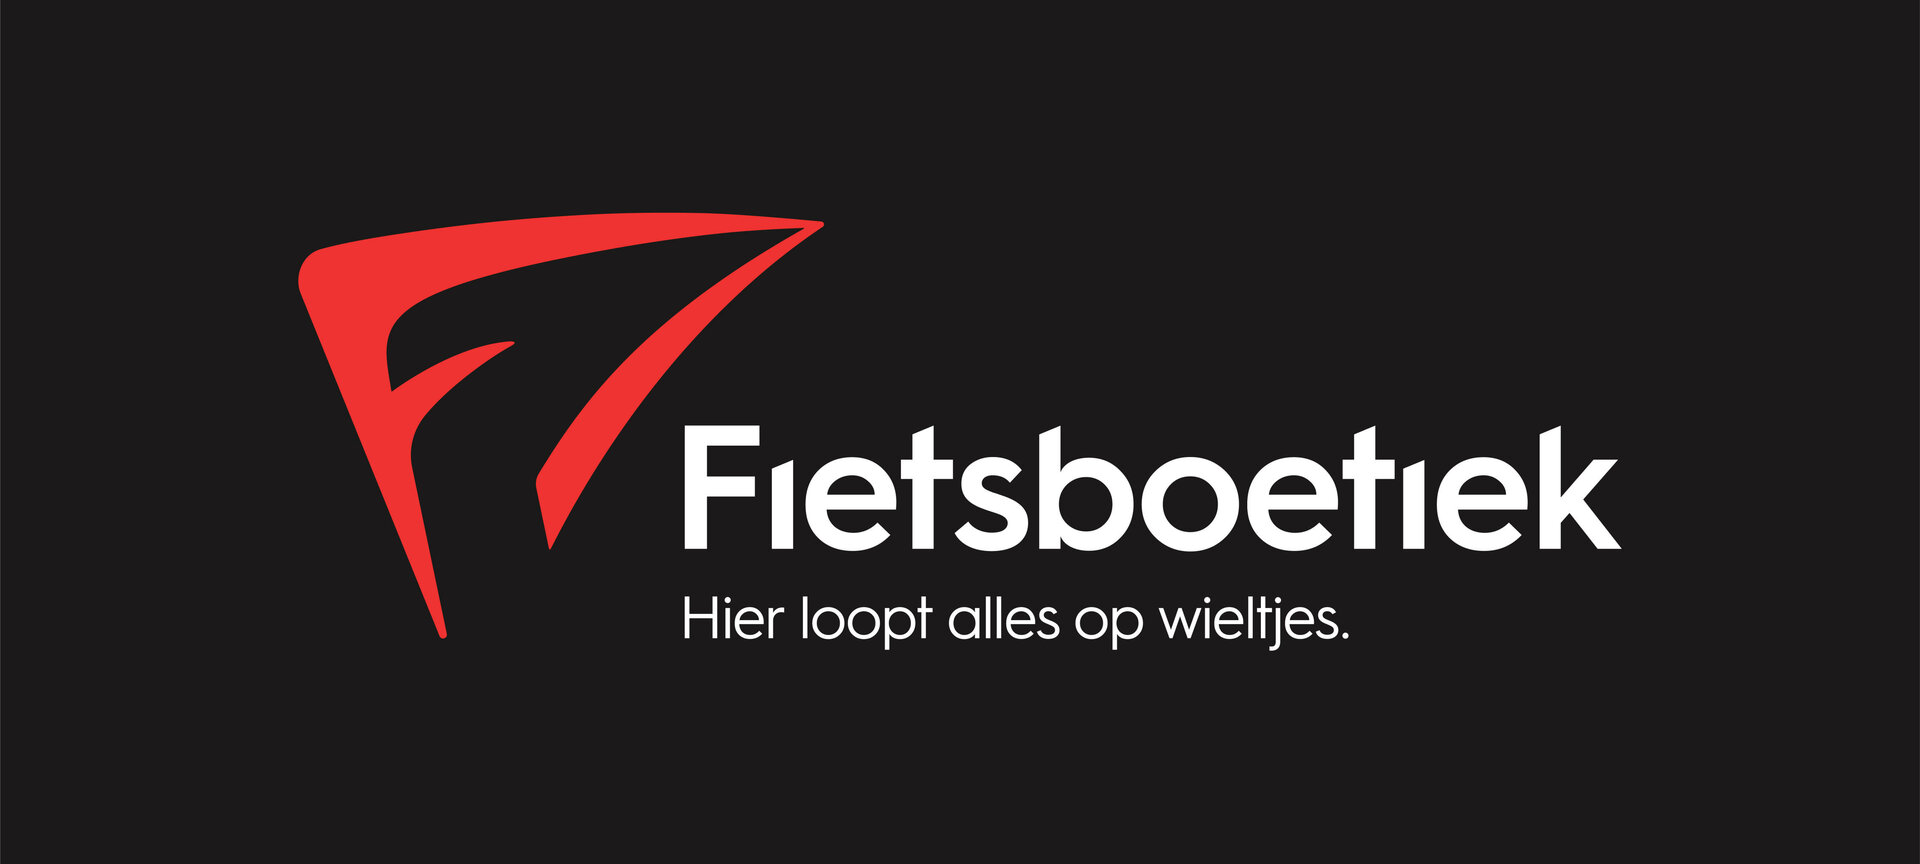 Fietsverhuur Fietsboetiek - regio Nationaal Park Bosland - Logo